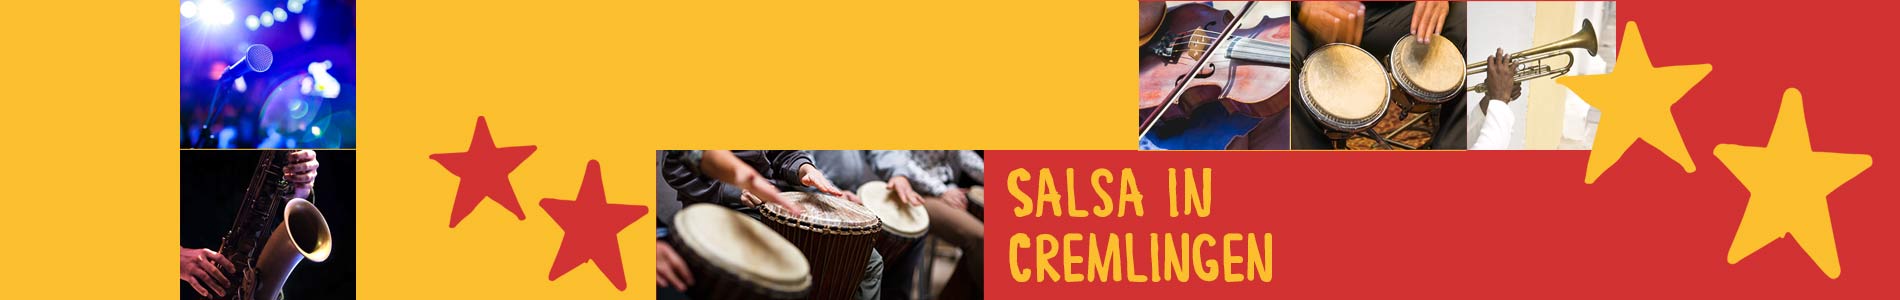 Salsa in Cremlingen – Salsa lernen und tanzen, Tanzkurse, Partys, Veranstaltungen